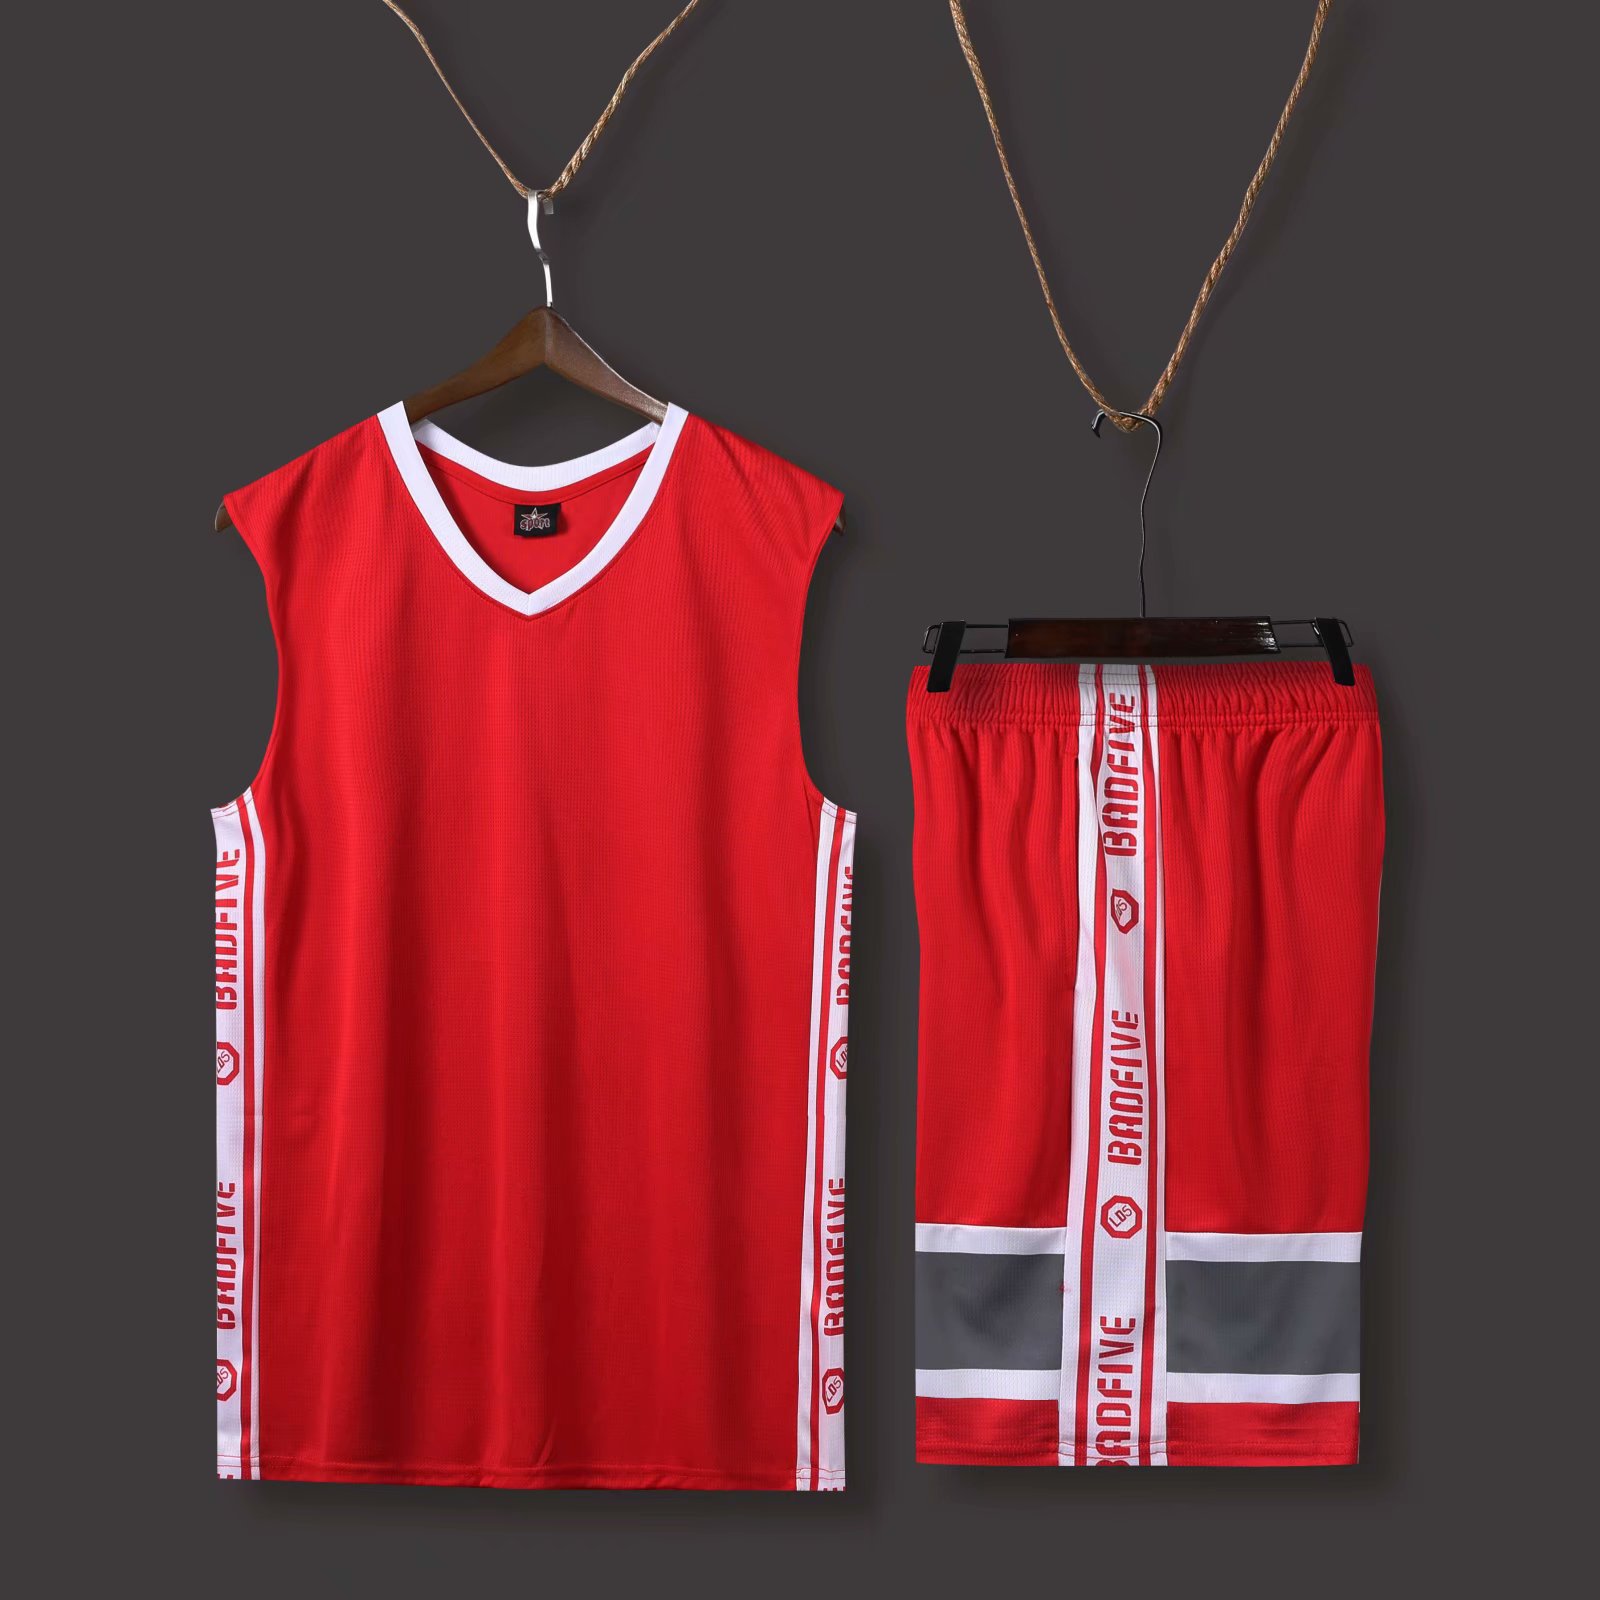 街头篮球俱乐部队服共享吗_街头篮球俱乐部队服怎么买_街头篮球俱乐部衣服